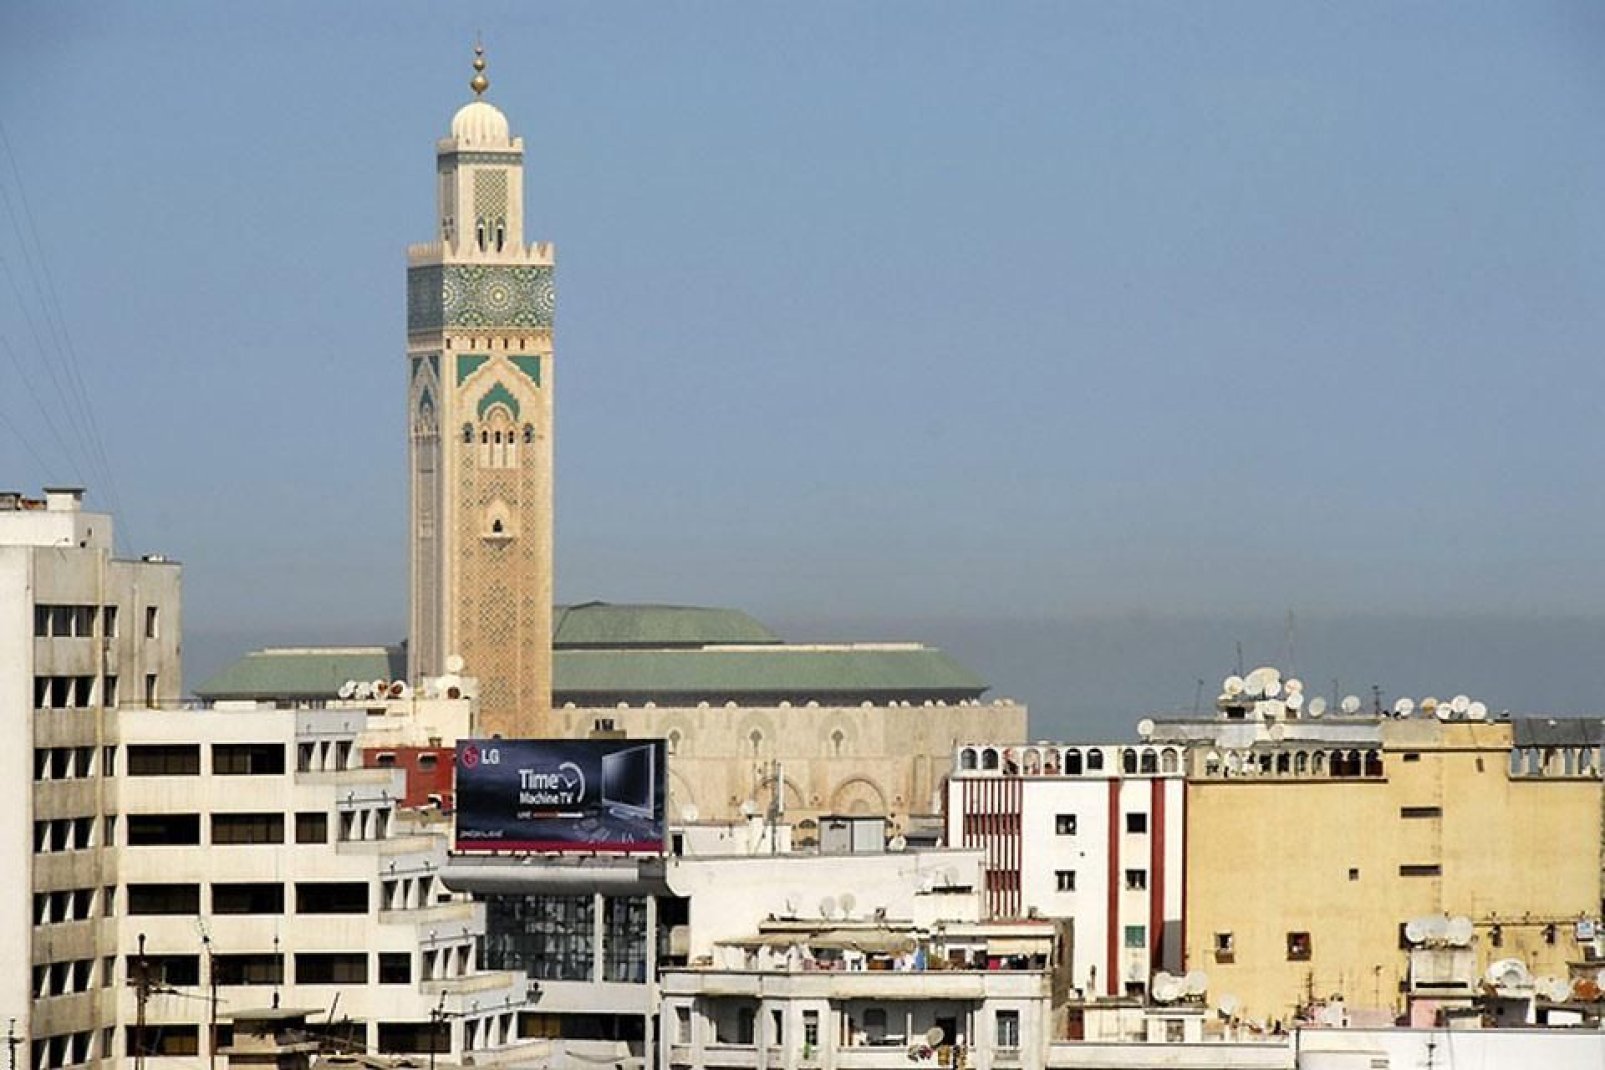 L'imam invite à la priére avec l'appel du muezzin que l'on peut entendre grâce à la hauteur du minaret